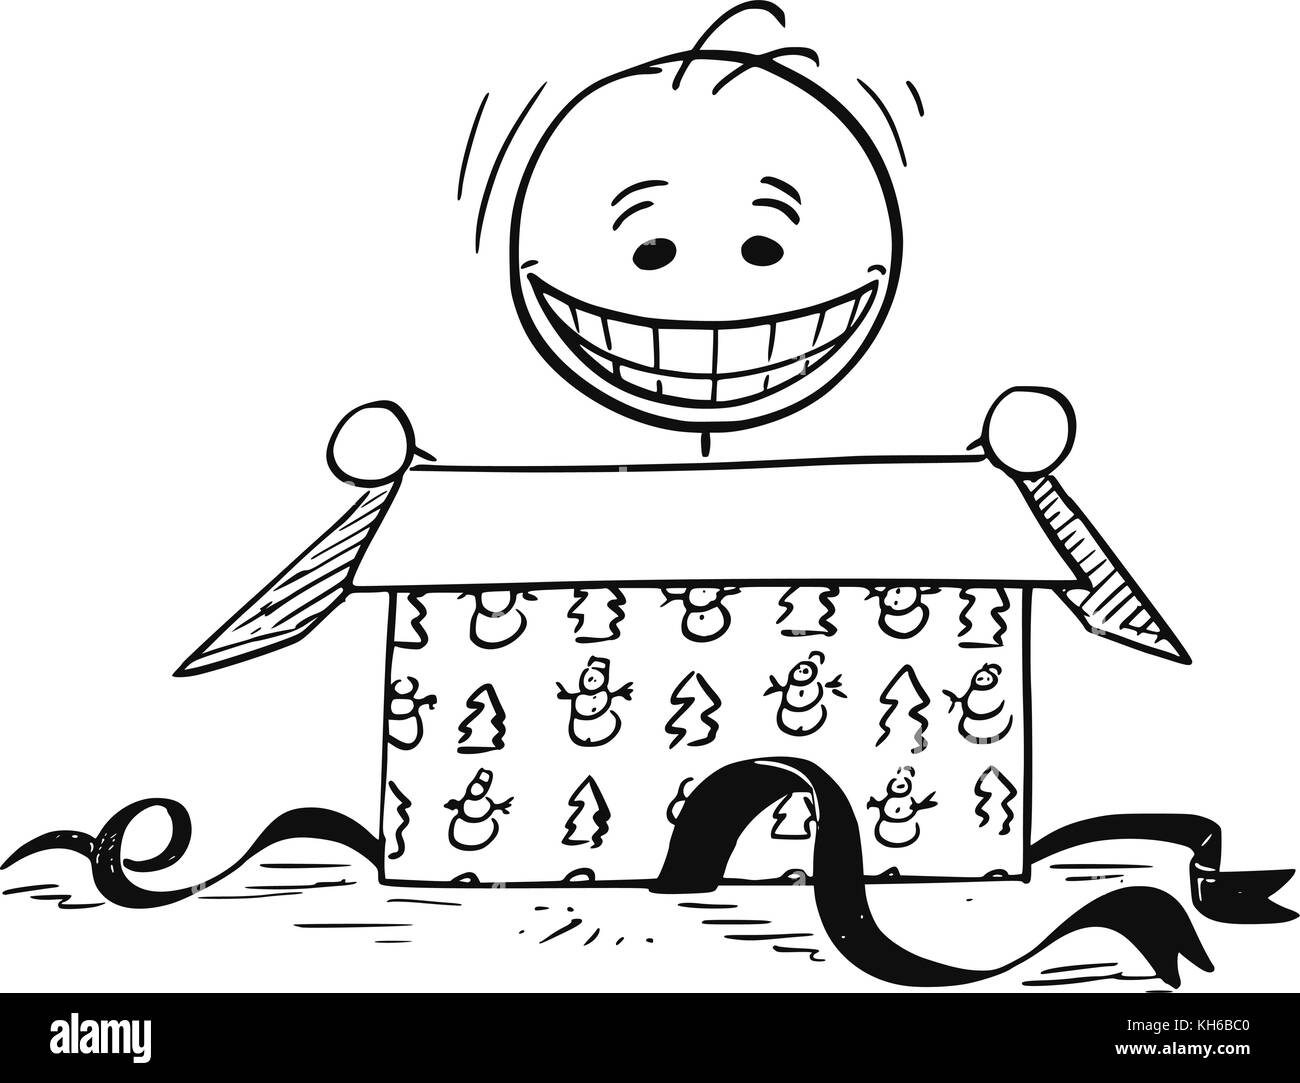 Cartoon stick Mann Zeichnung Abbildung: Glücklich lächelnde Mann in Weihnachten Geschenk zu öffnen. Stock Vektor